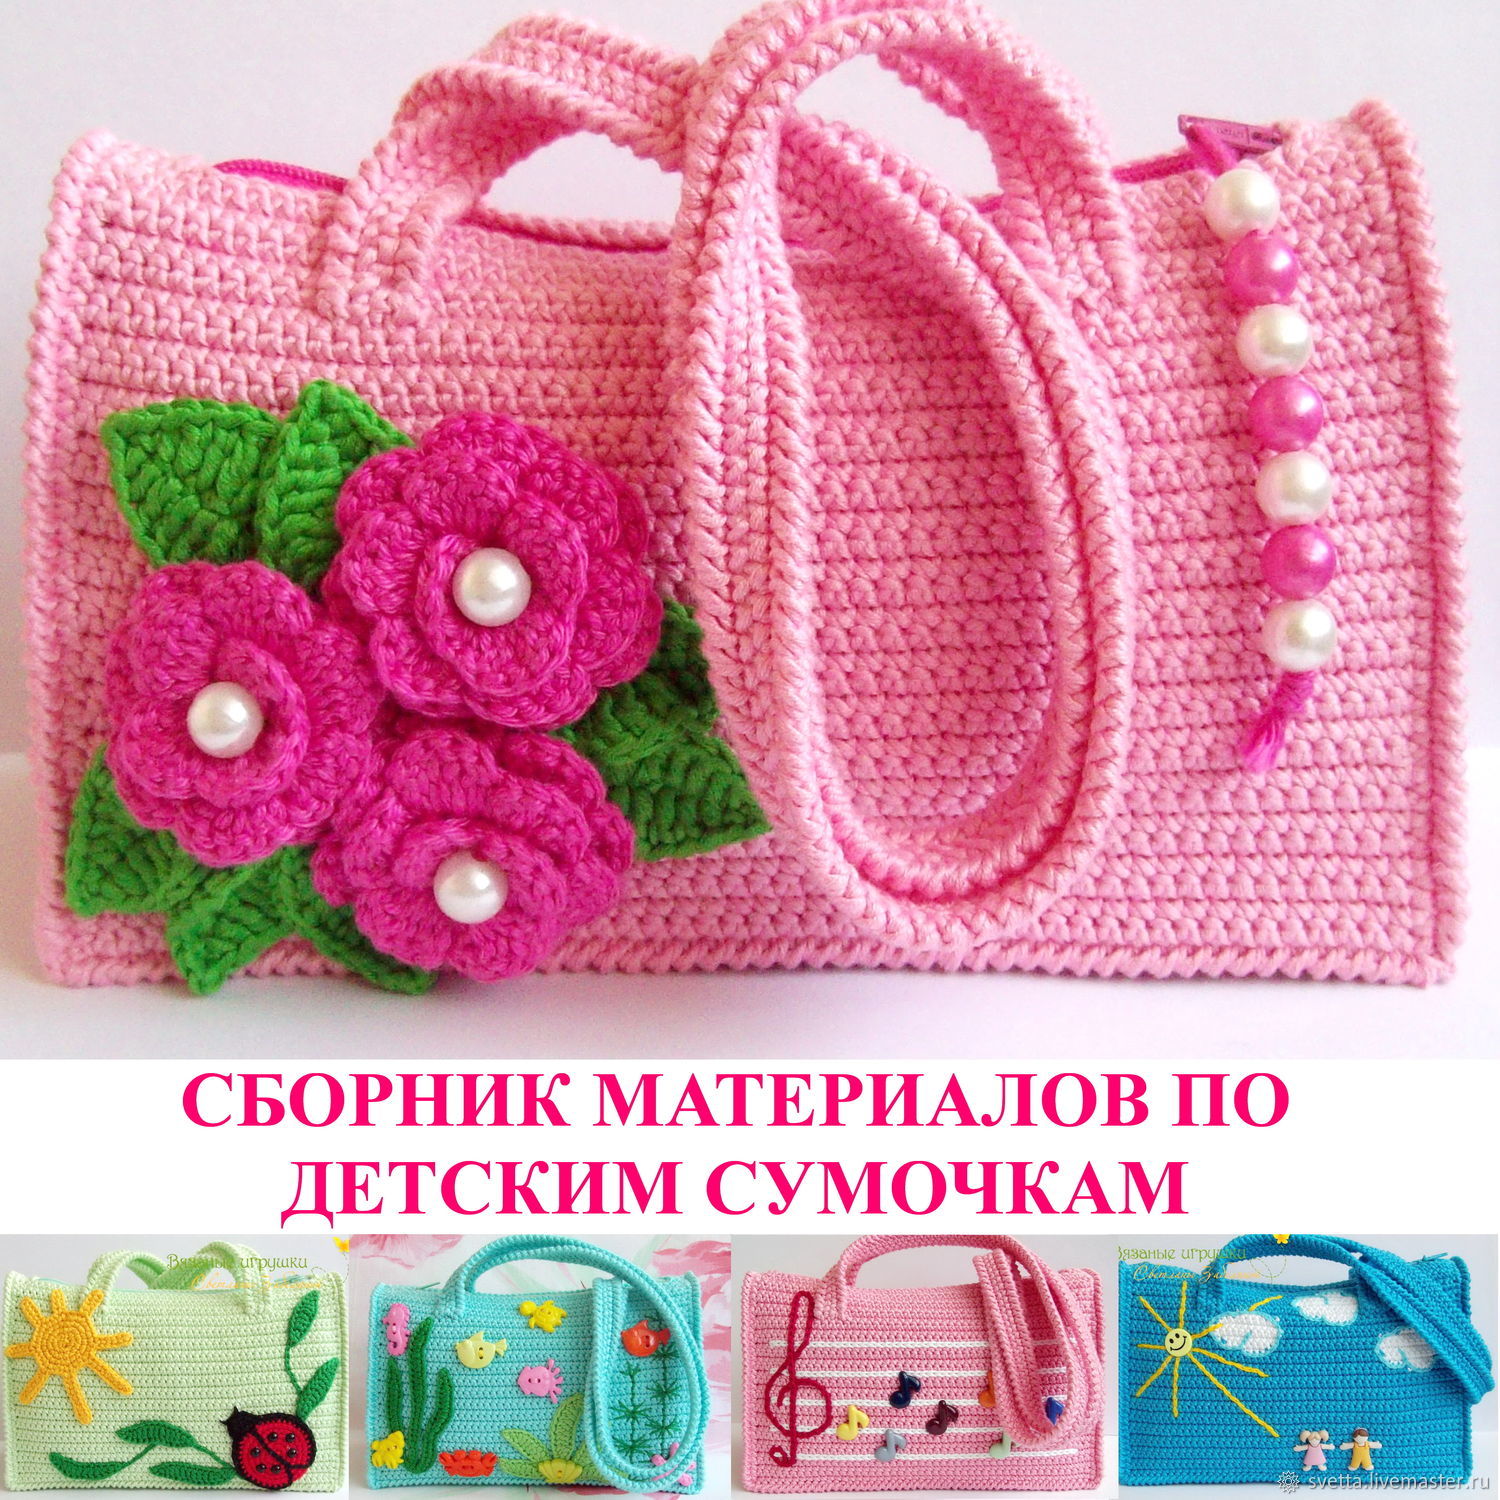 Купить детские сумки в интернет магазине hb-crm.ru